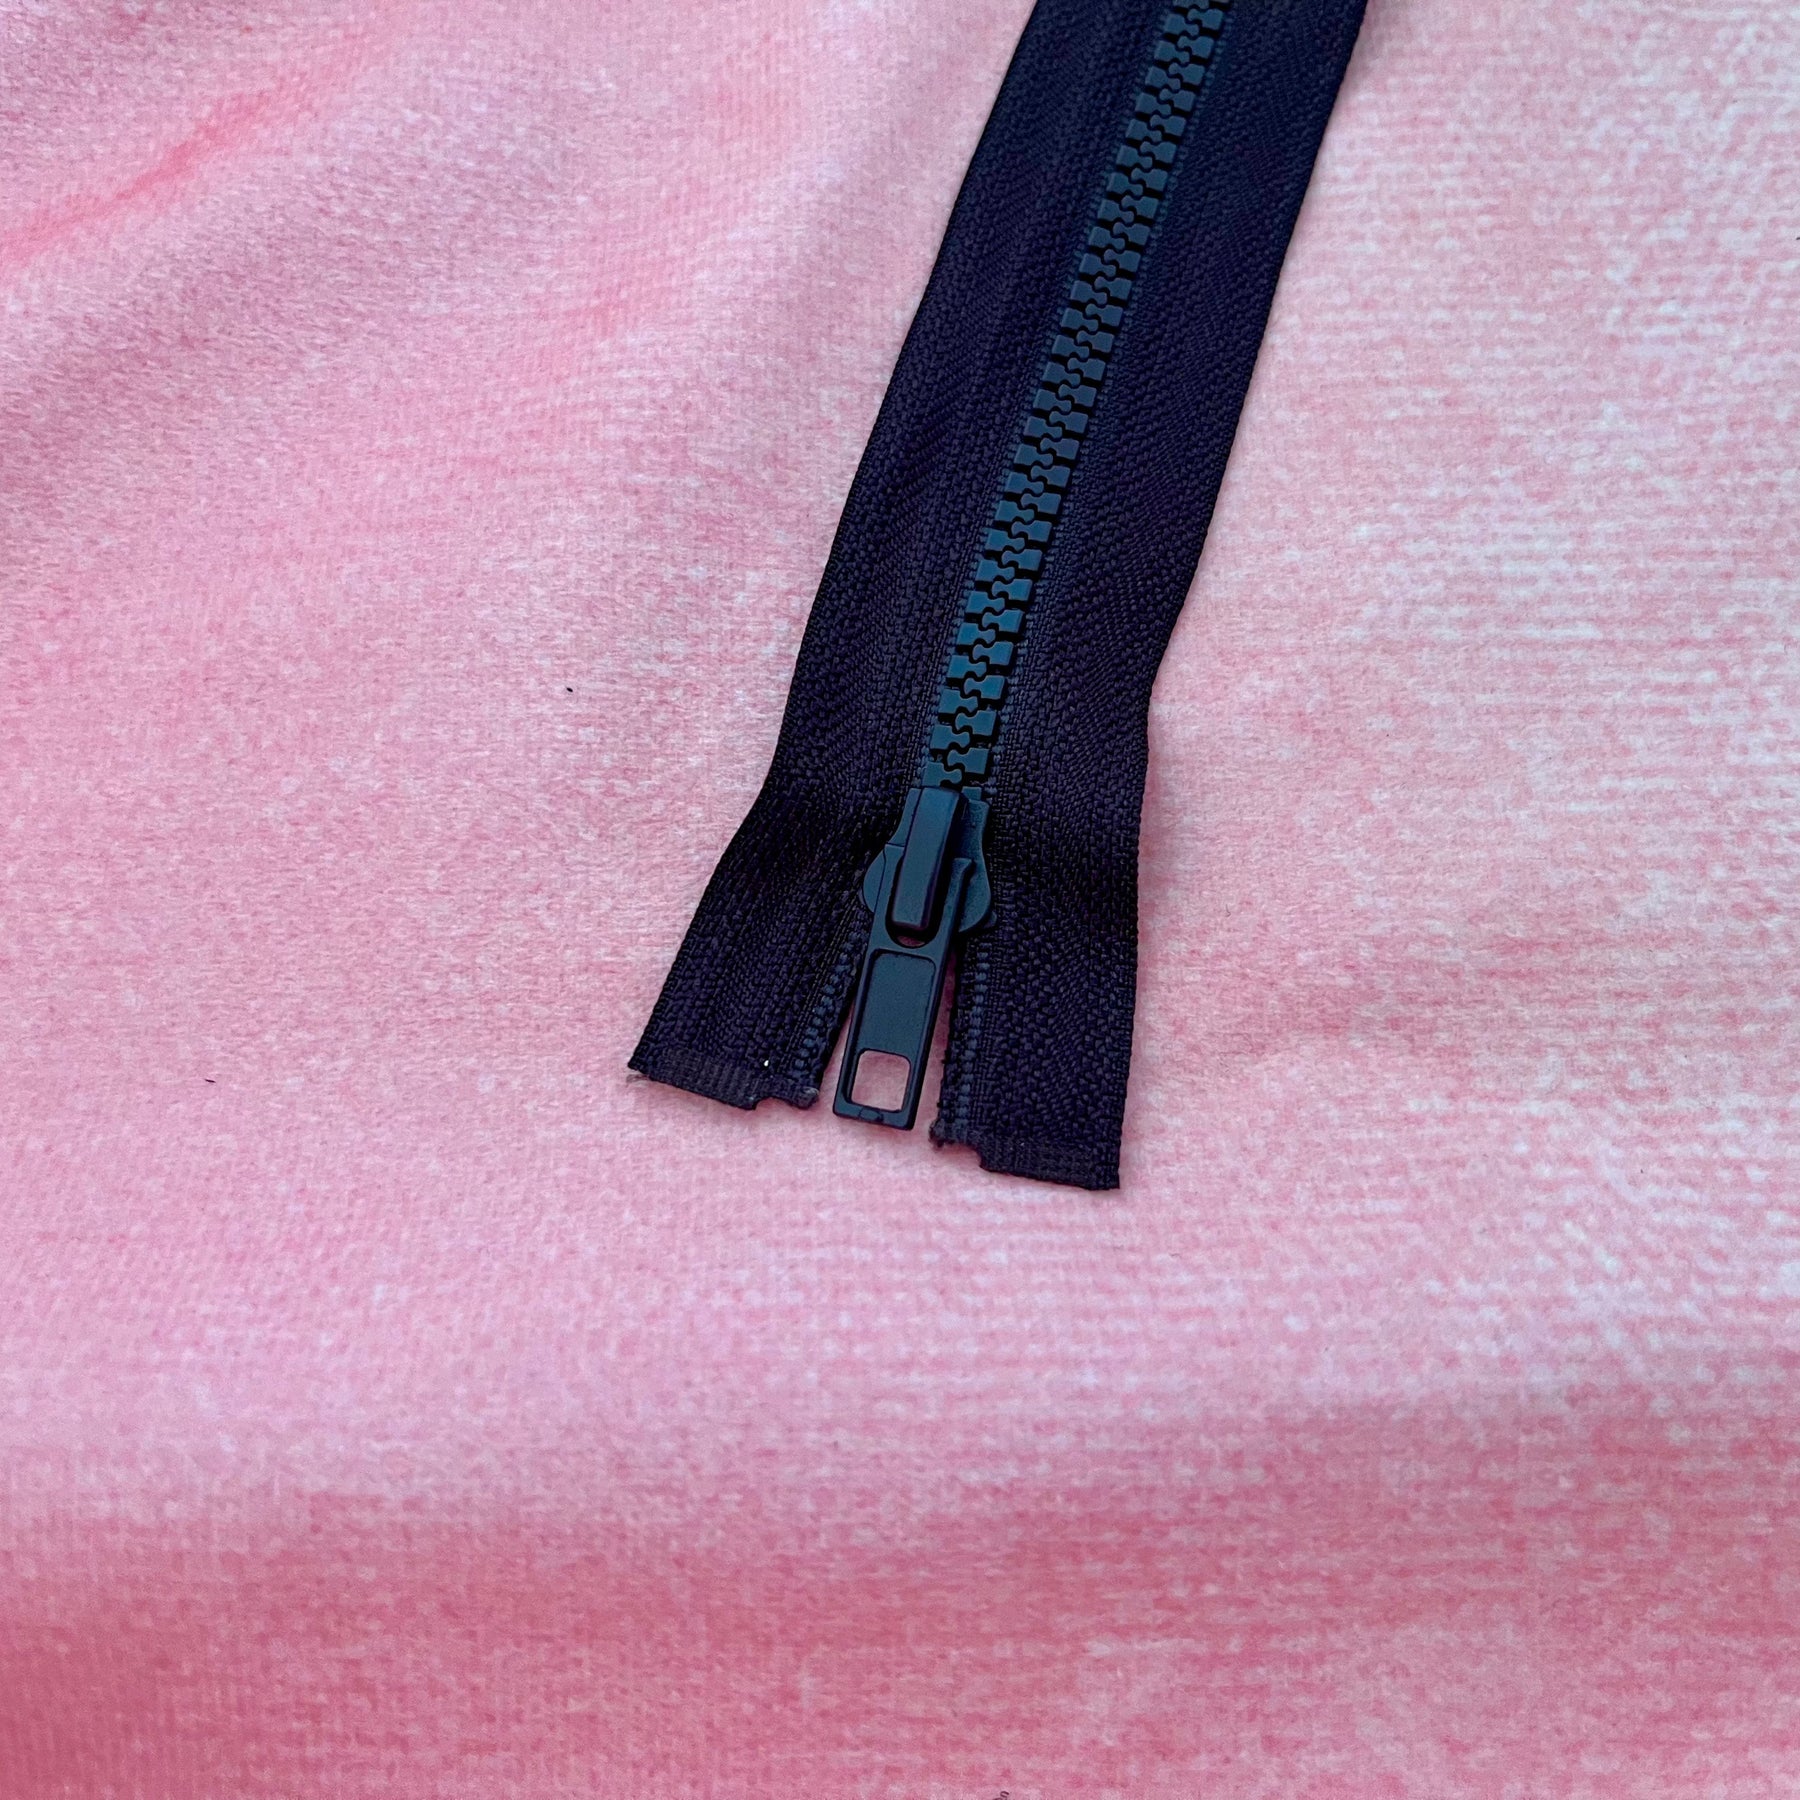 Jacken Reißverschluss 65 cm schokoladenbraun Stück poshpinks